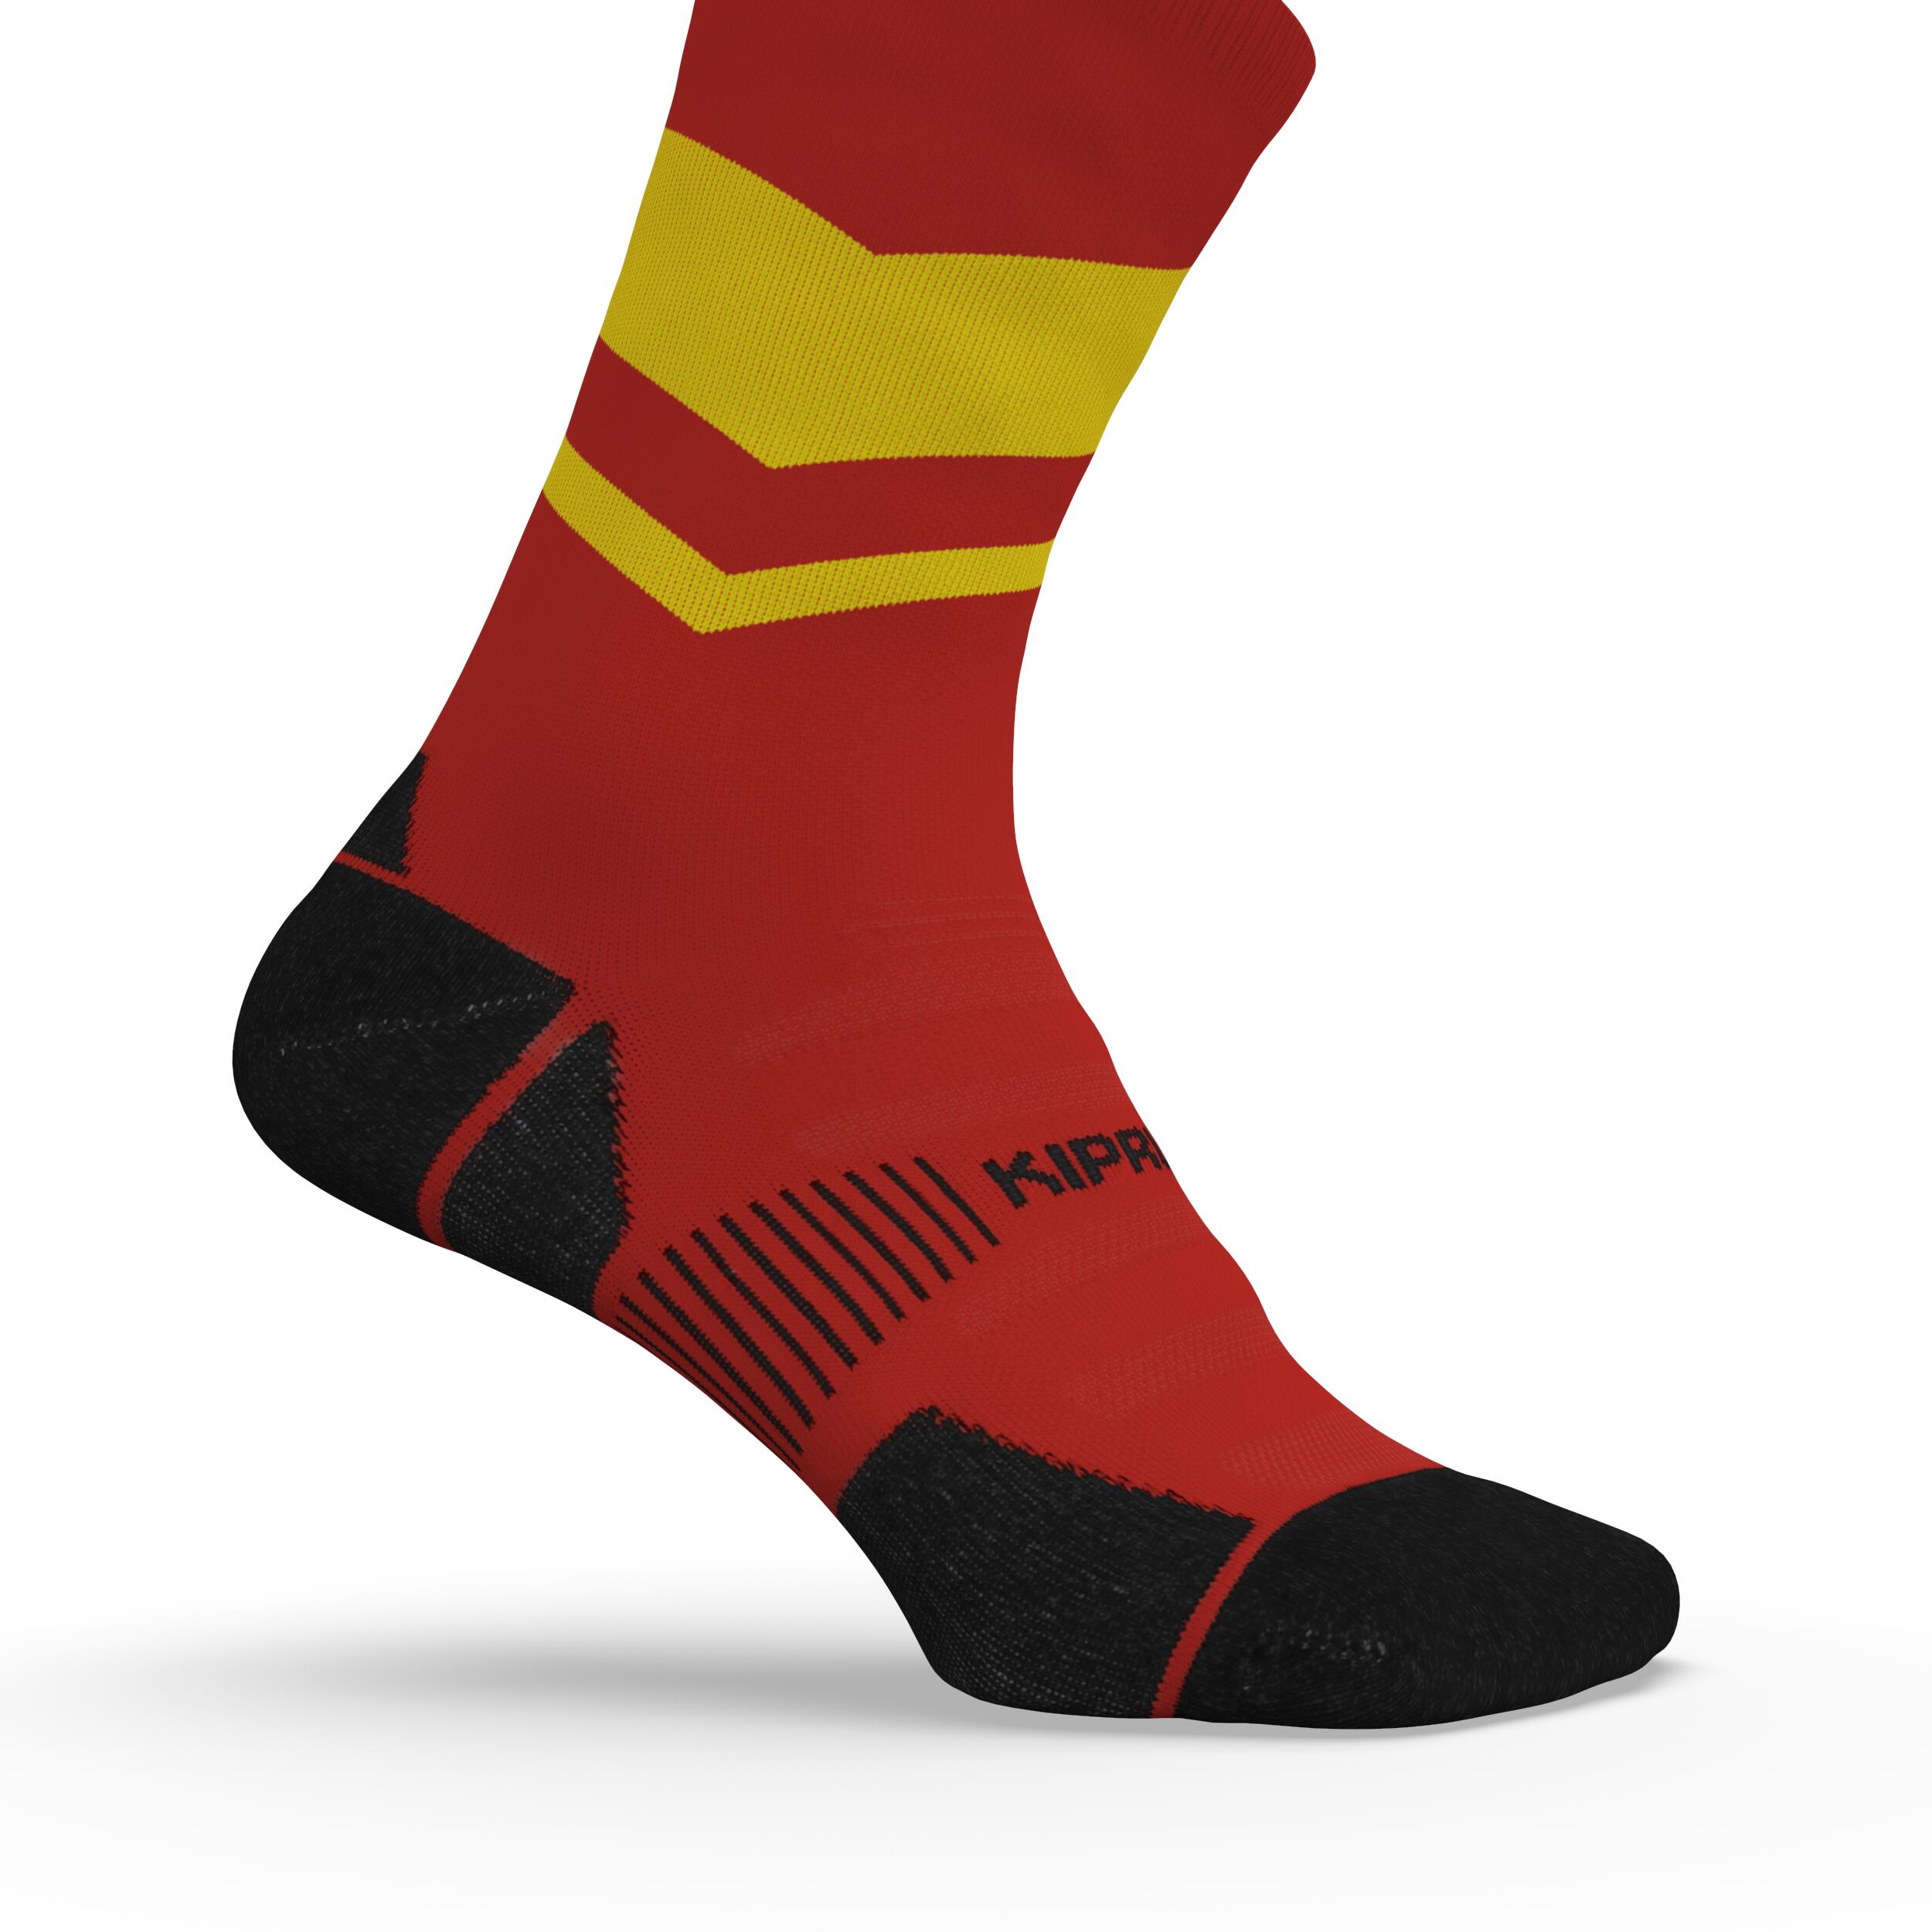 Run900 Mid-Calf Thick Running Socks - Red/Yellow 4/6